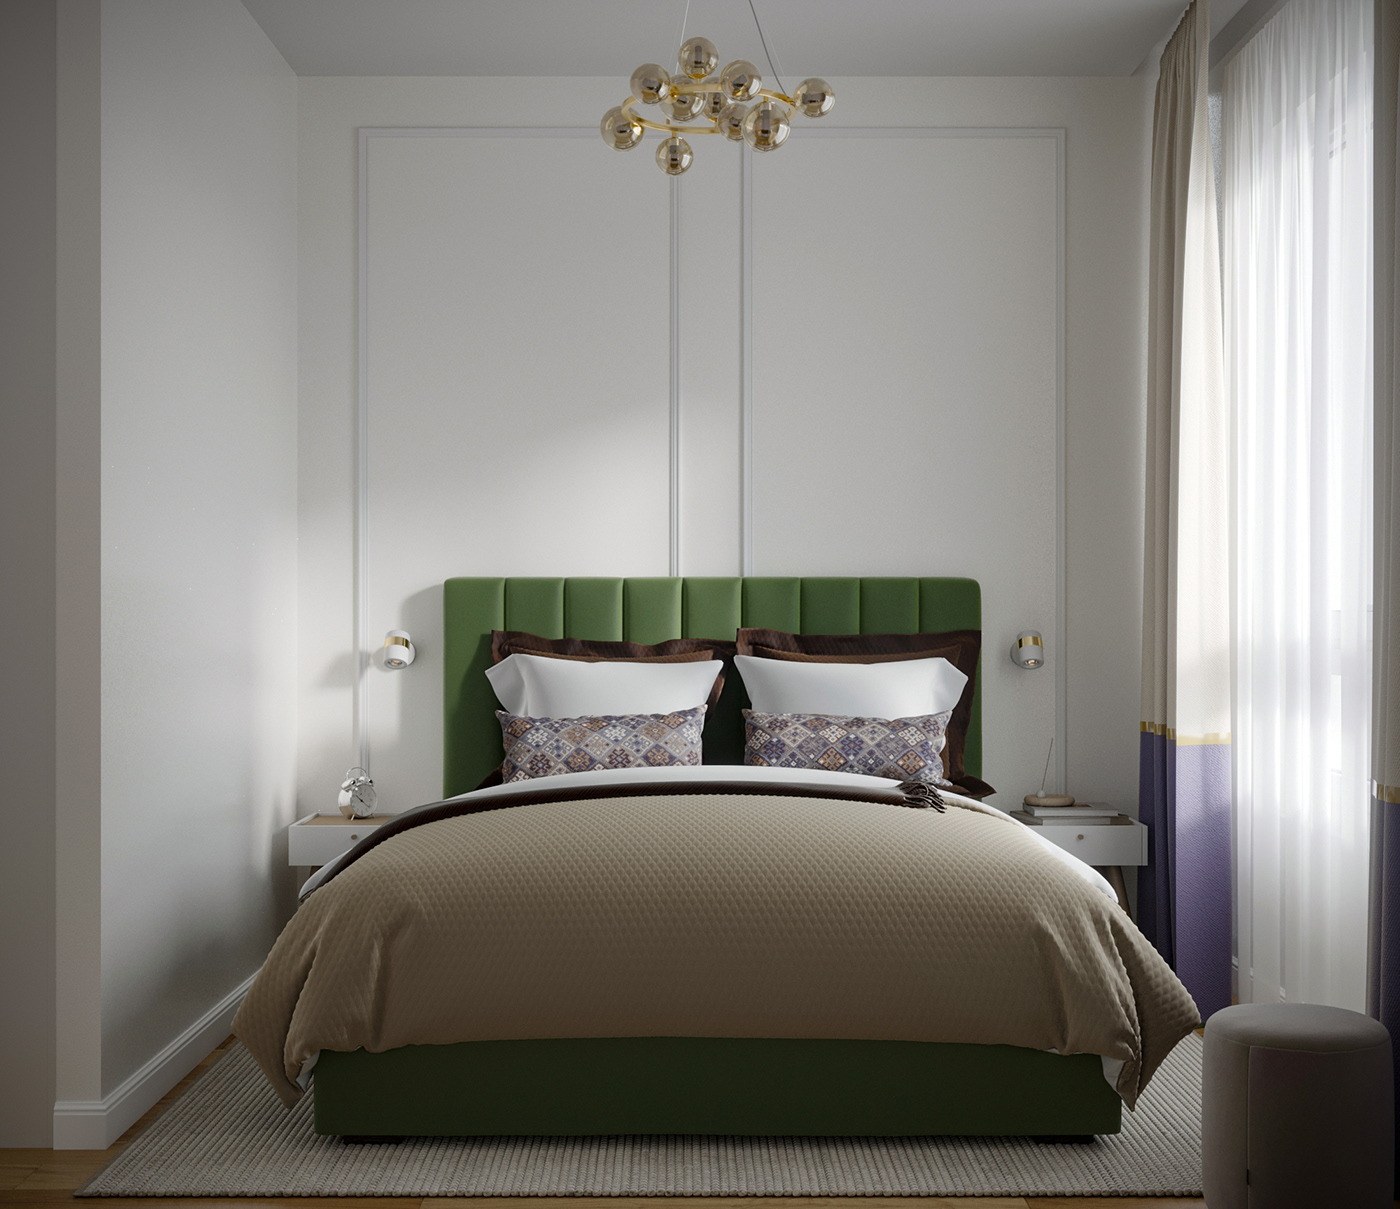 interior design  visualization 3D 3ds max architecture Render corona design bedroom green